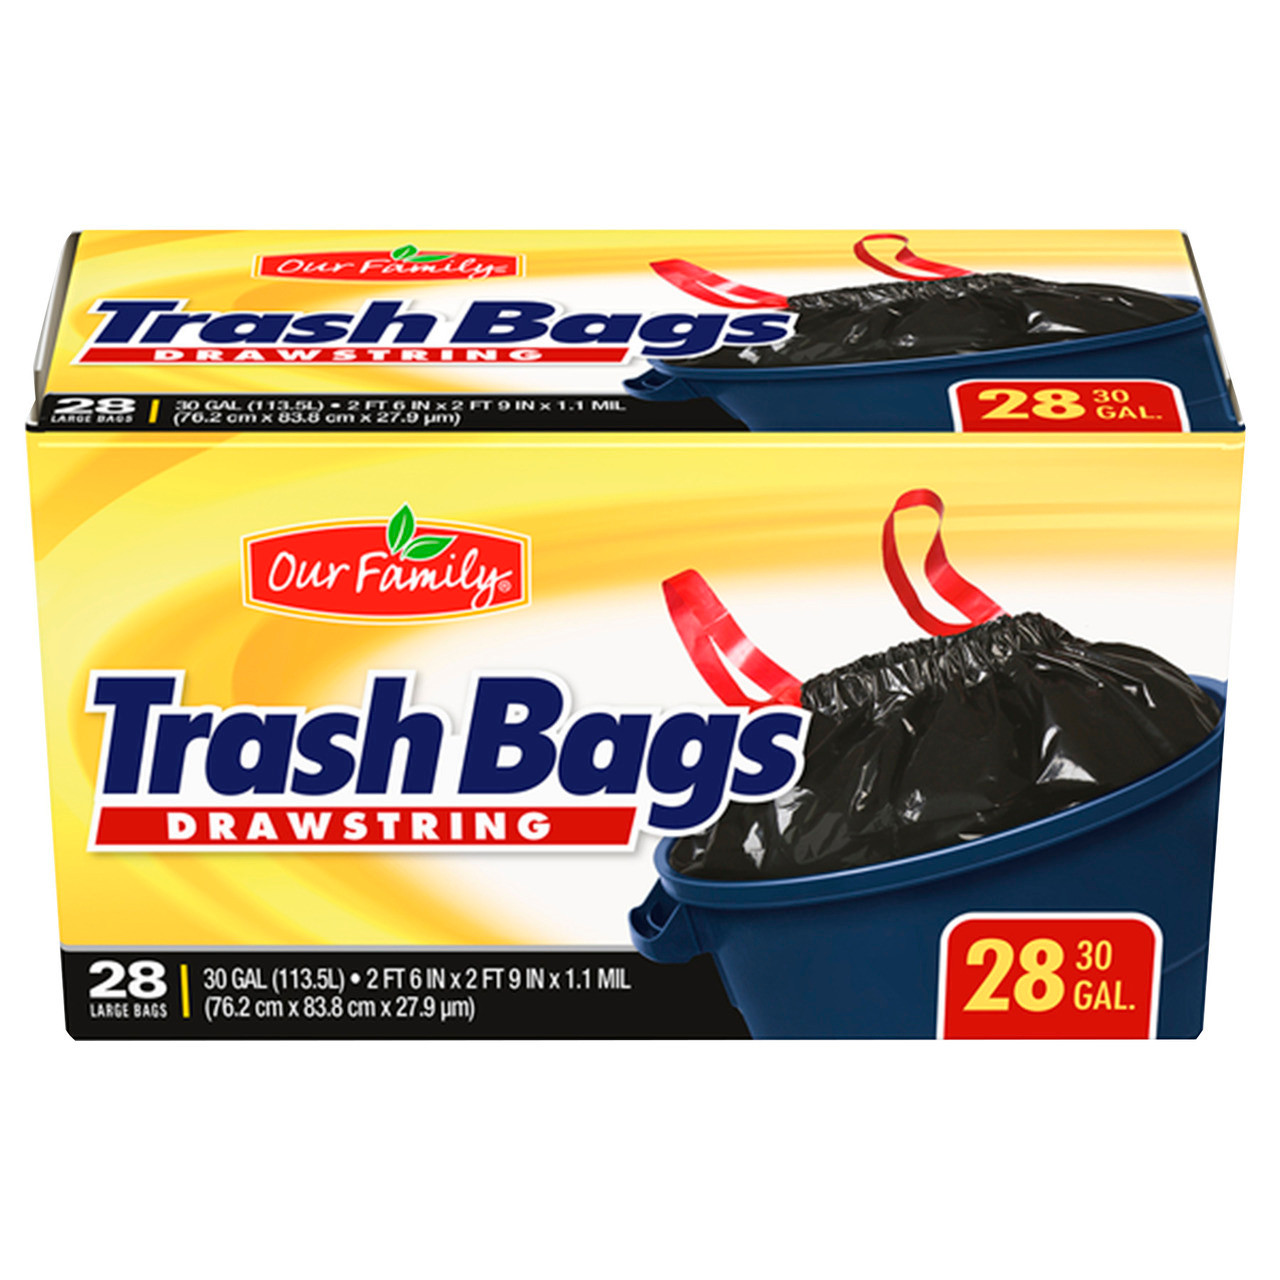 Best Choice Drawstring Trash Bag - 28 ct